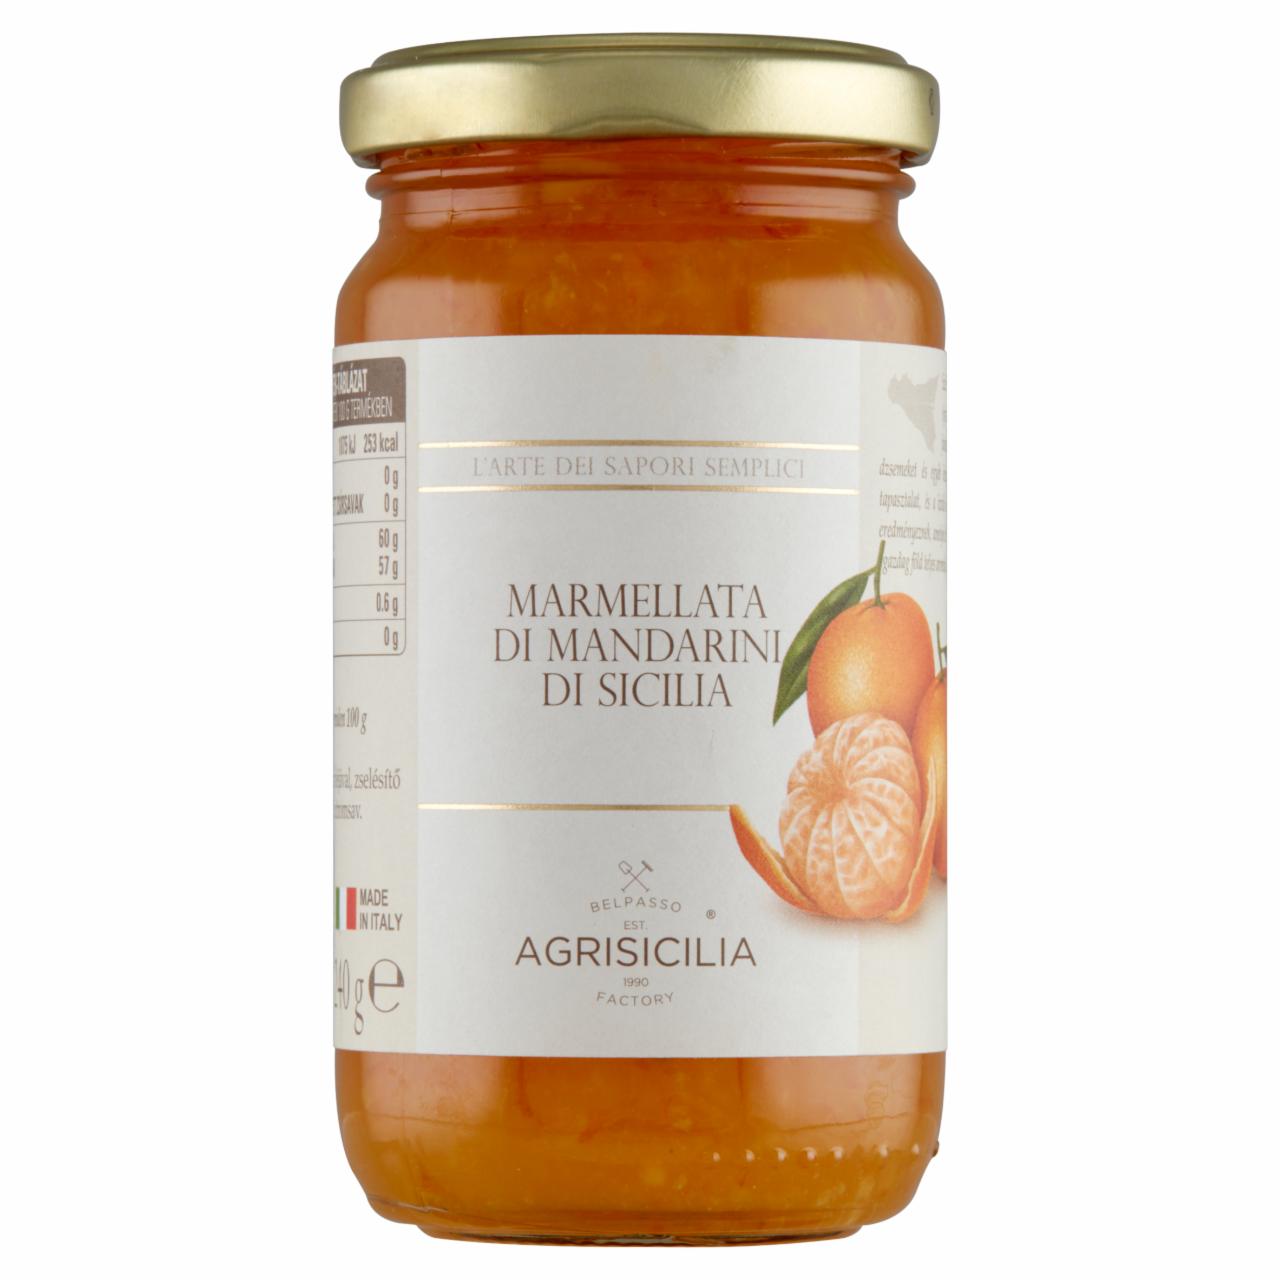 Képek - Agrisicilia szicíliai mandarinlekvár 240 g